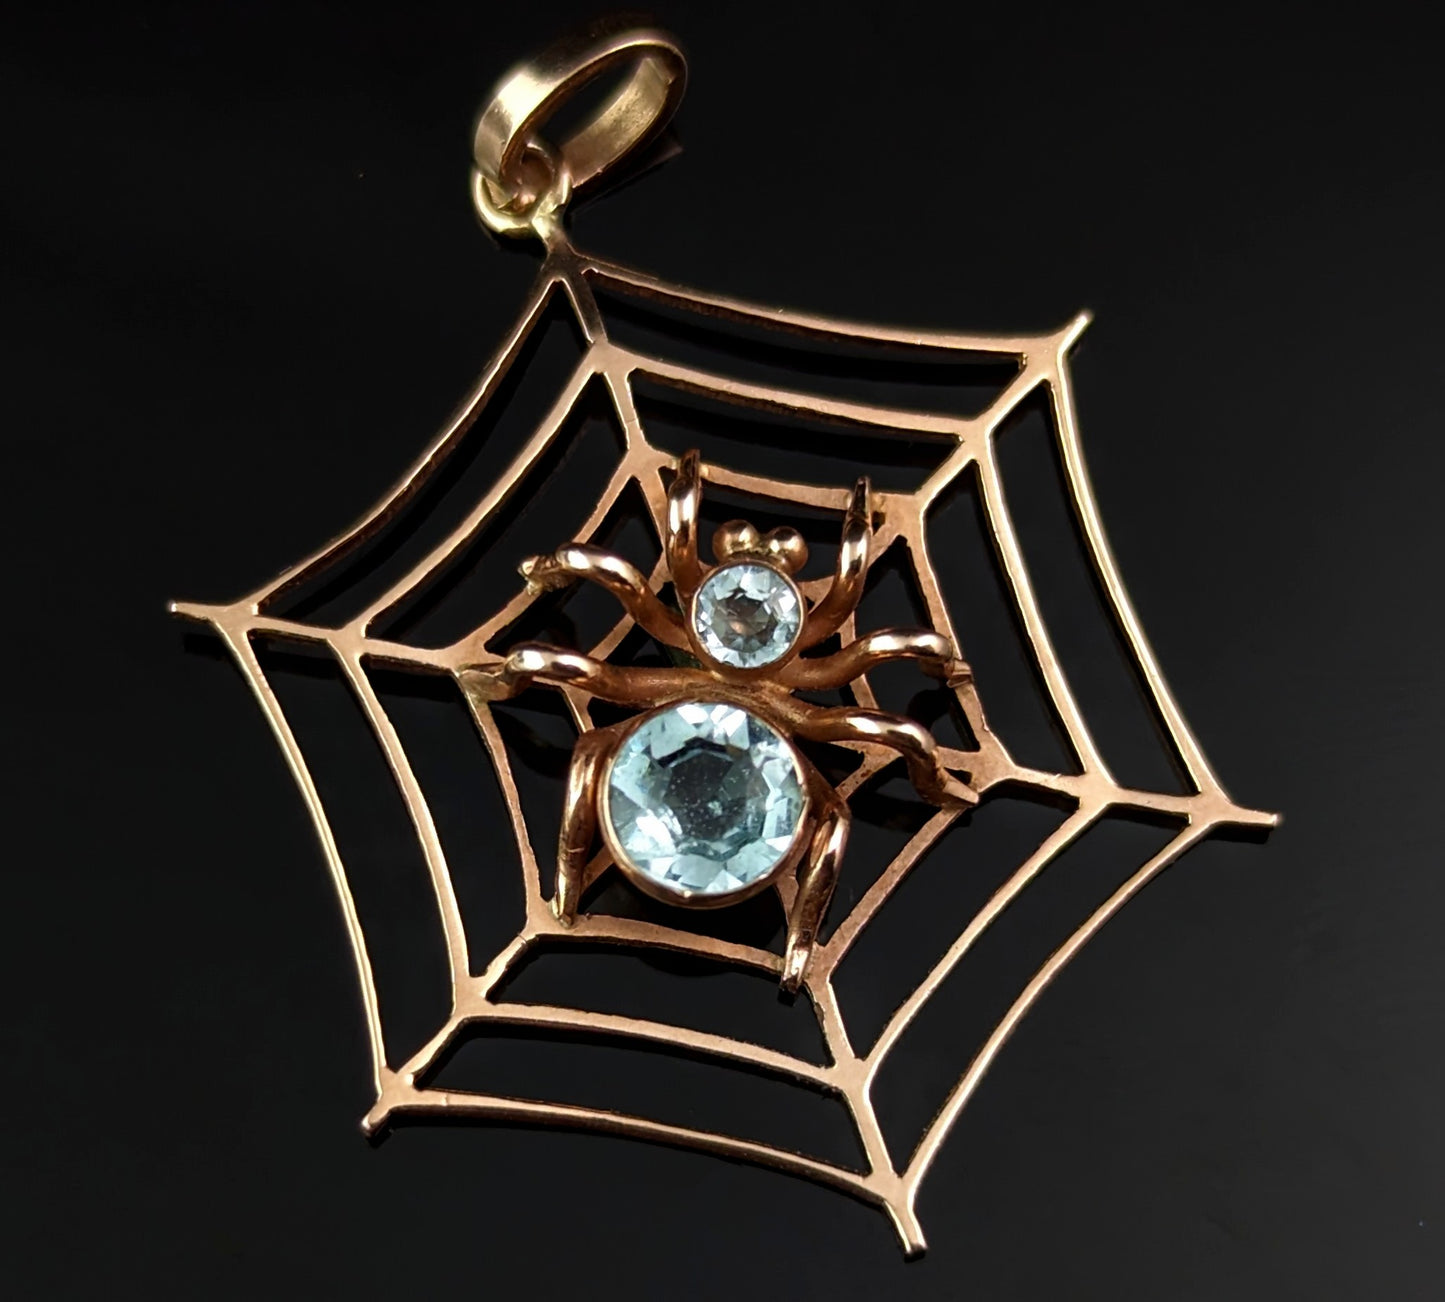 Antique Spider and Web pendant, Aquamarine, 9ct rose gold